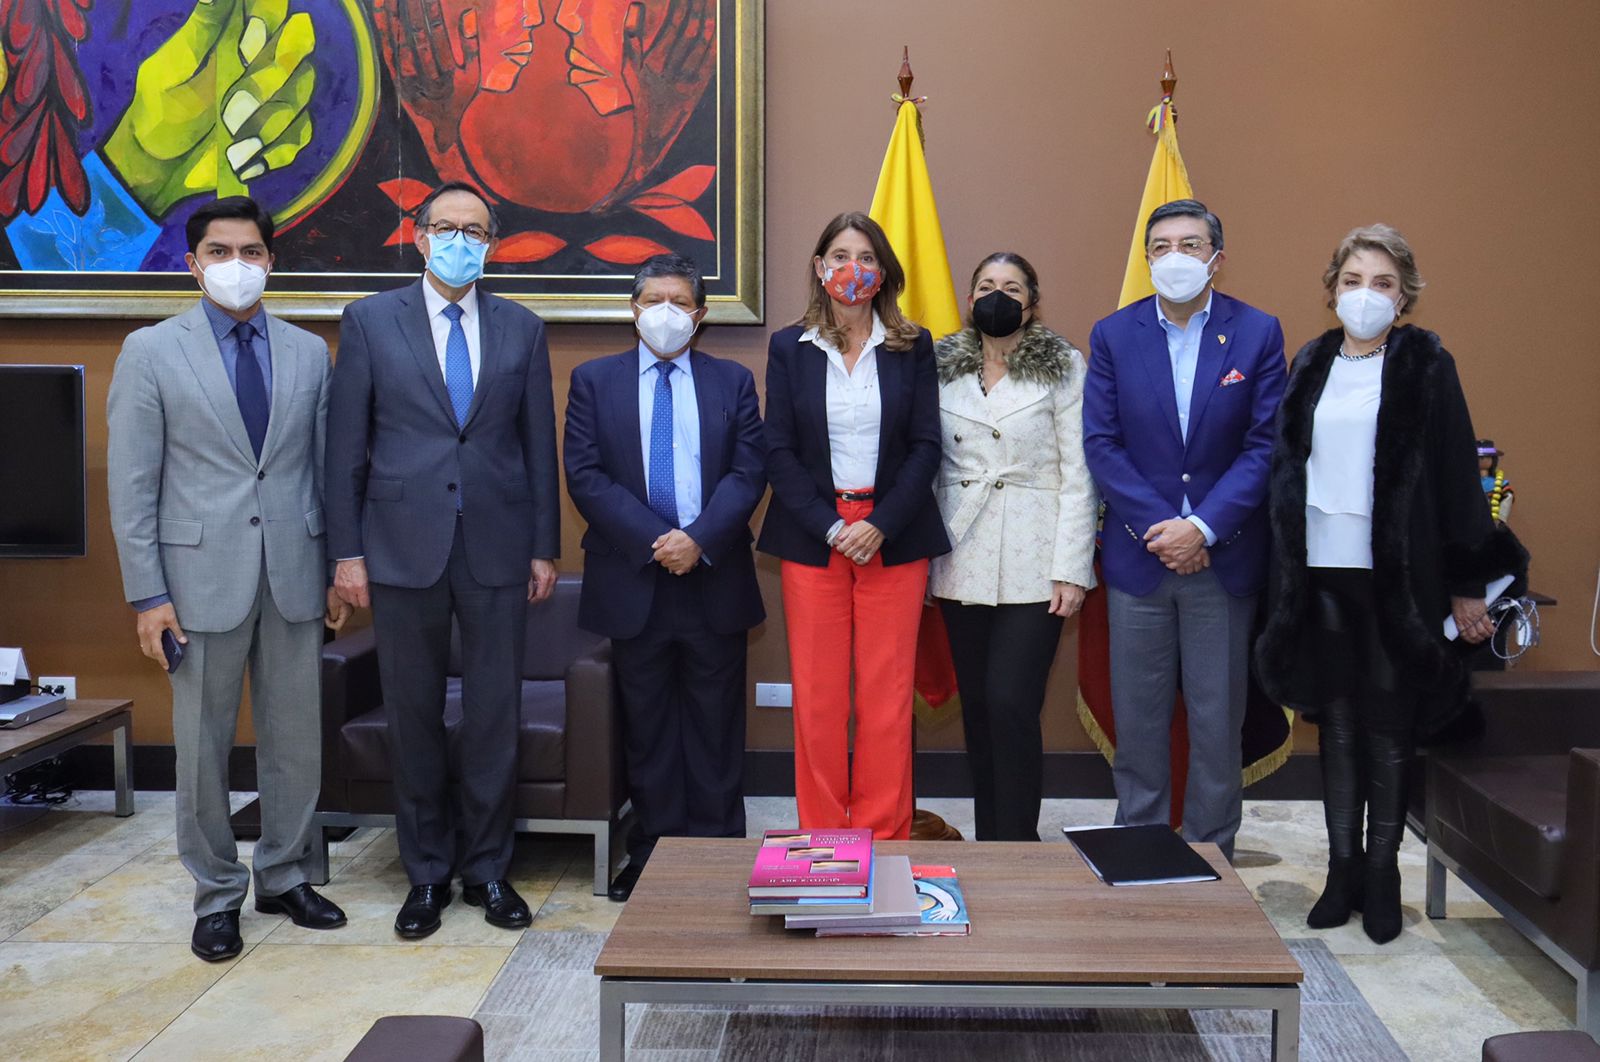 Vicepresidente-Canciller participa en Consejo Andino de Ministros en Ecuador